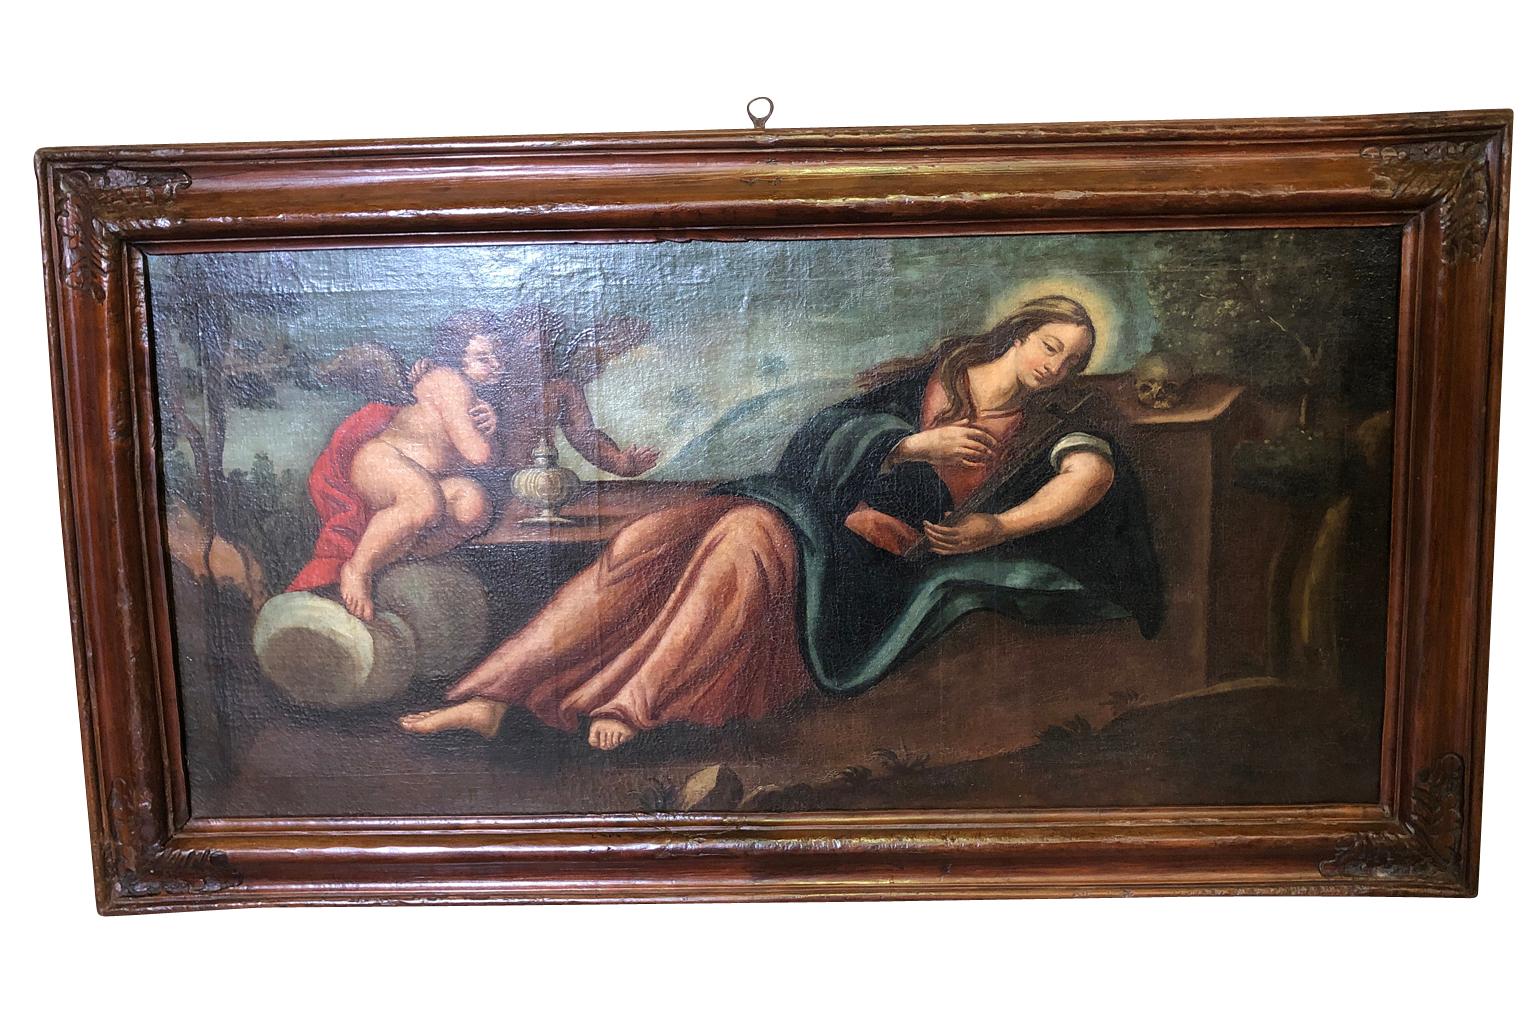 Une époustouflante huile sur toile espagnole du 18ème siècle représentant Marie-Madeleine dans son cadre d'origine. De beaux détails.